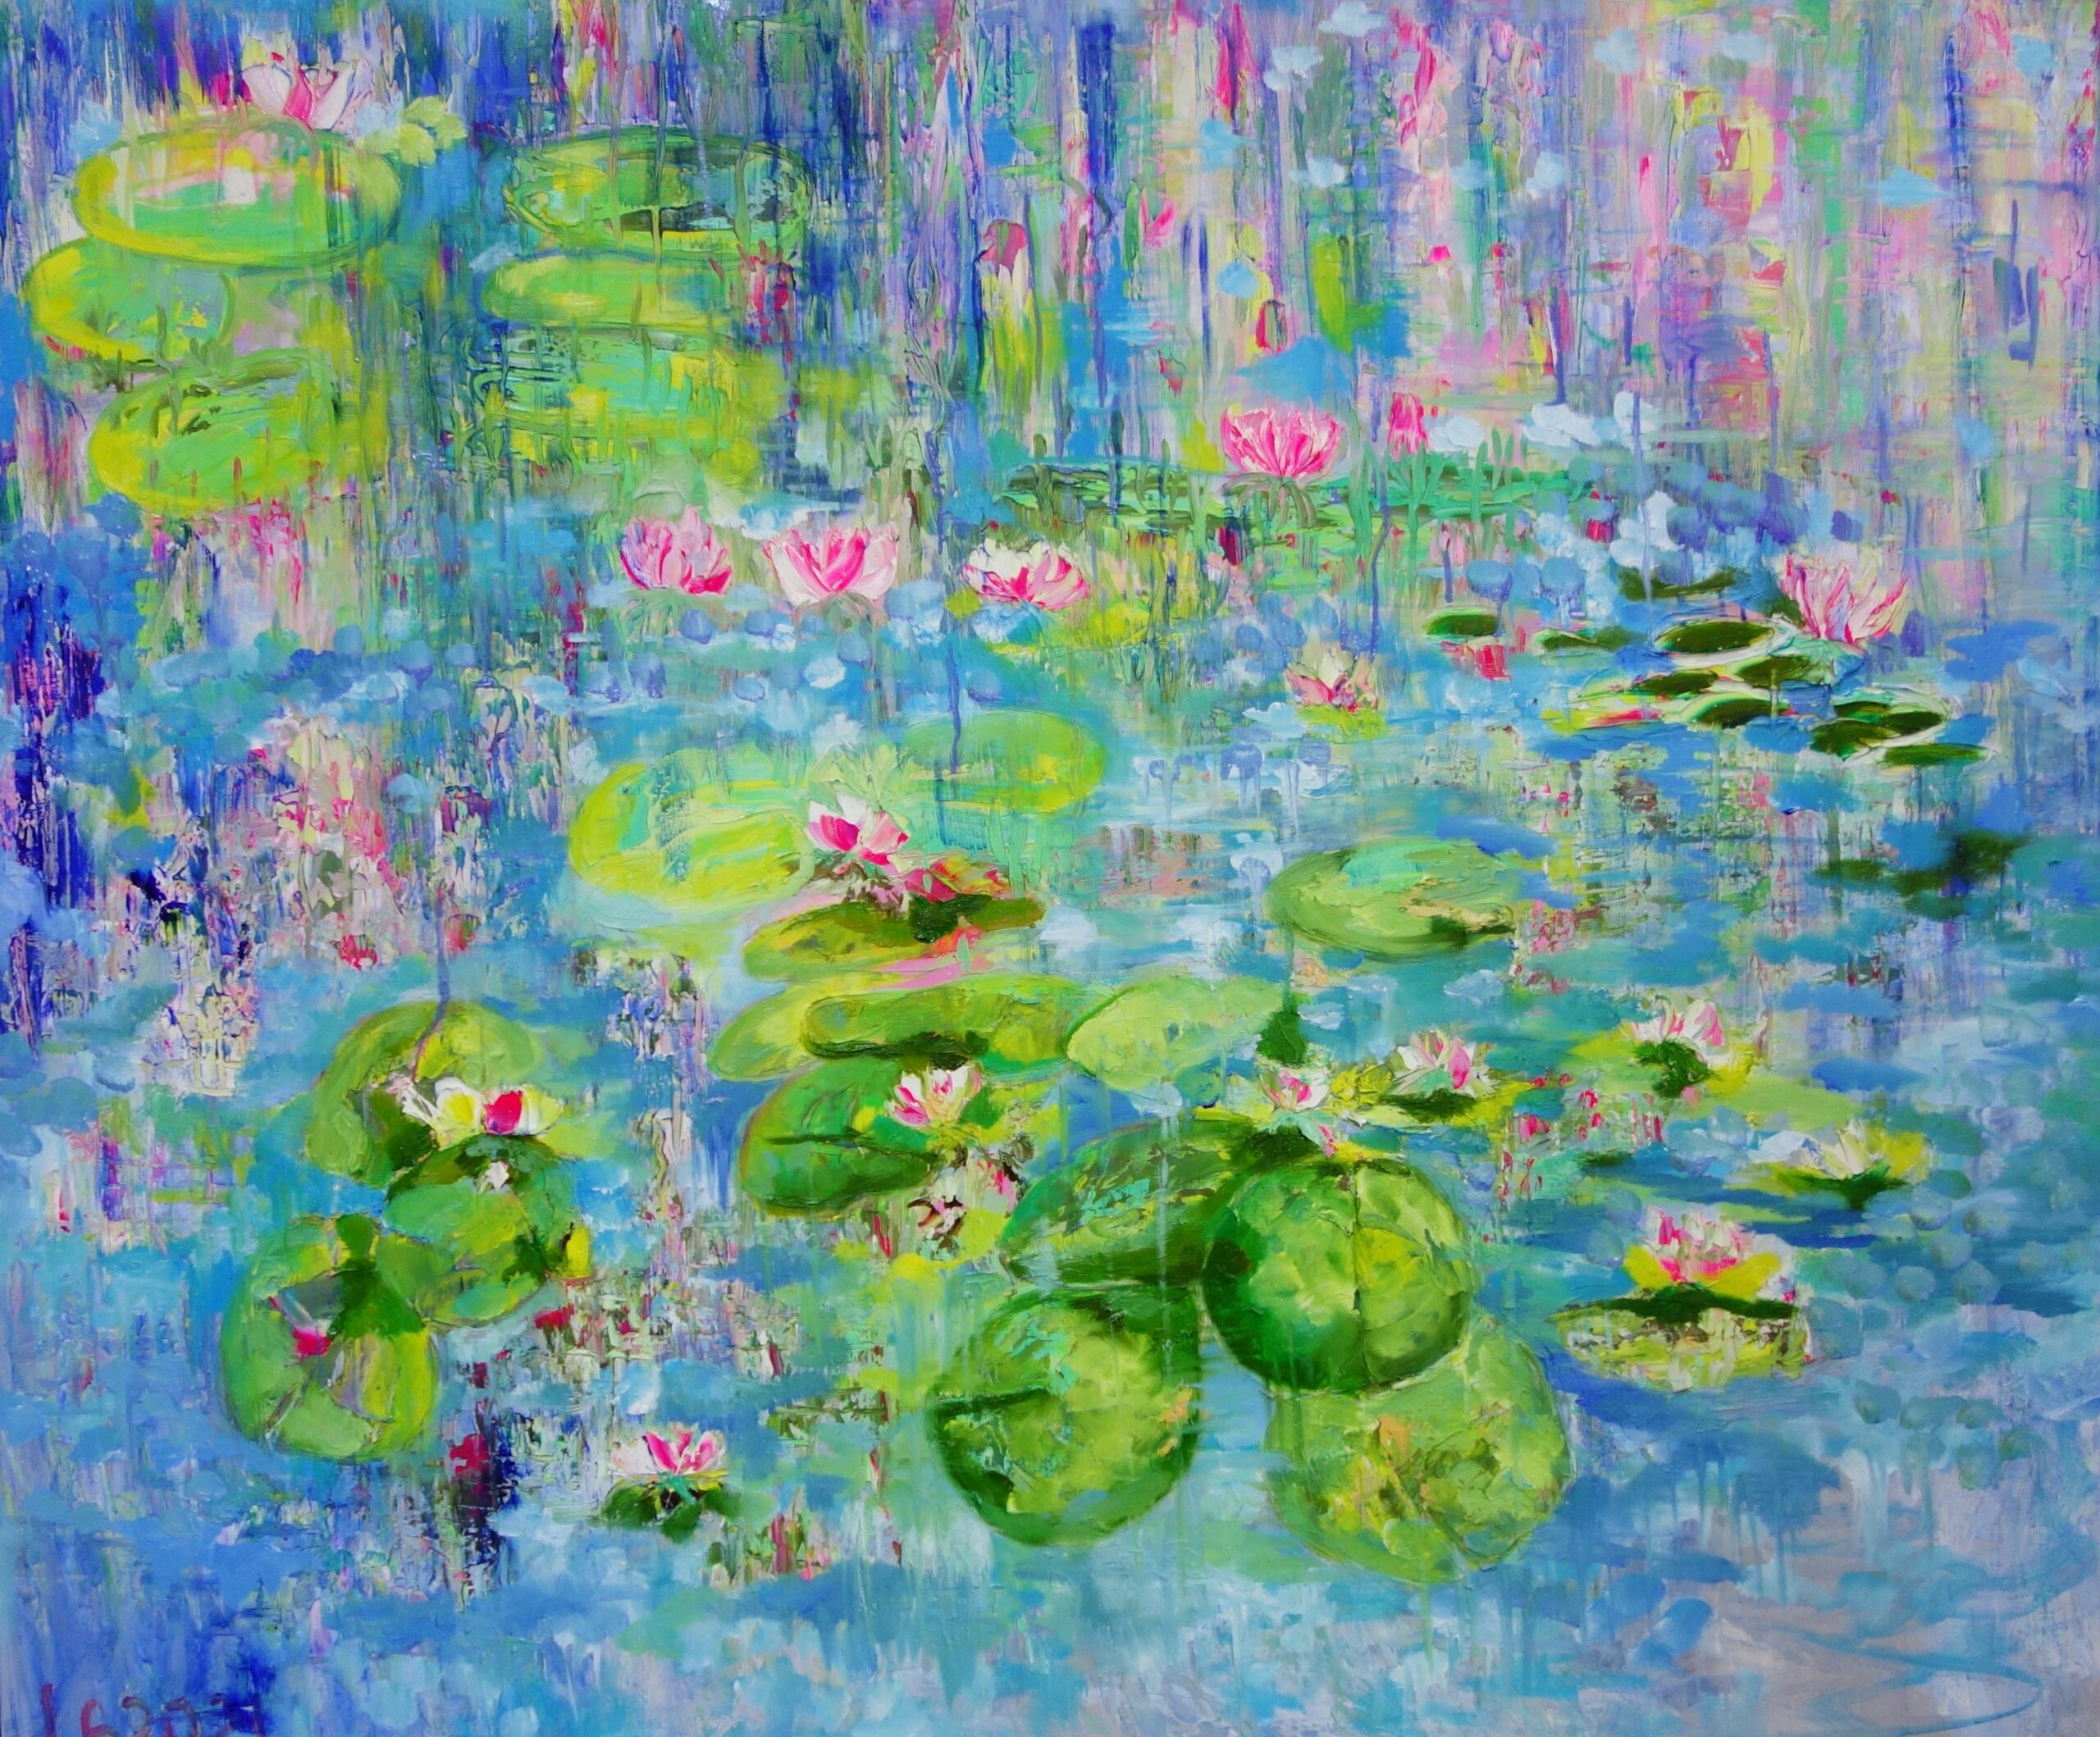 Monet's Waterlilies 2021 by Lesley Blackburn